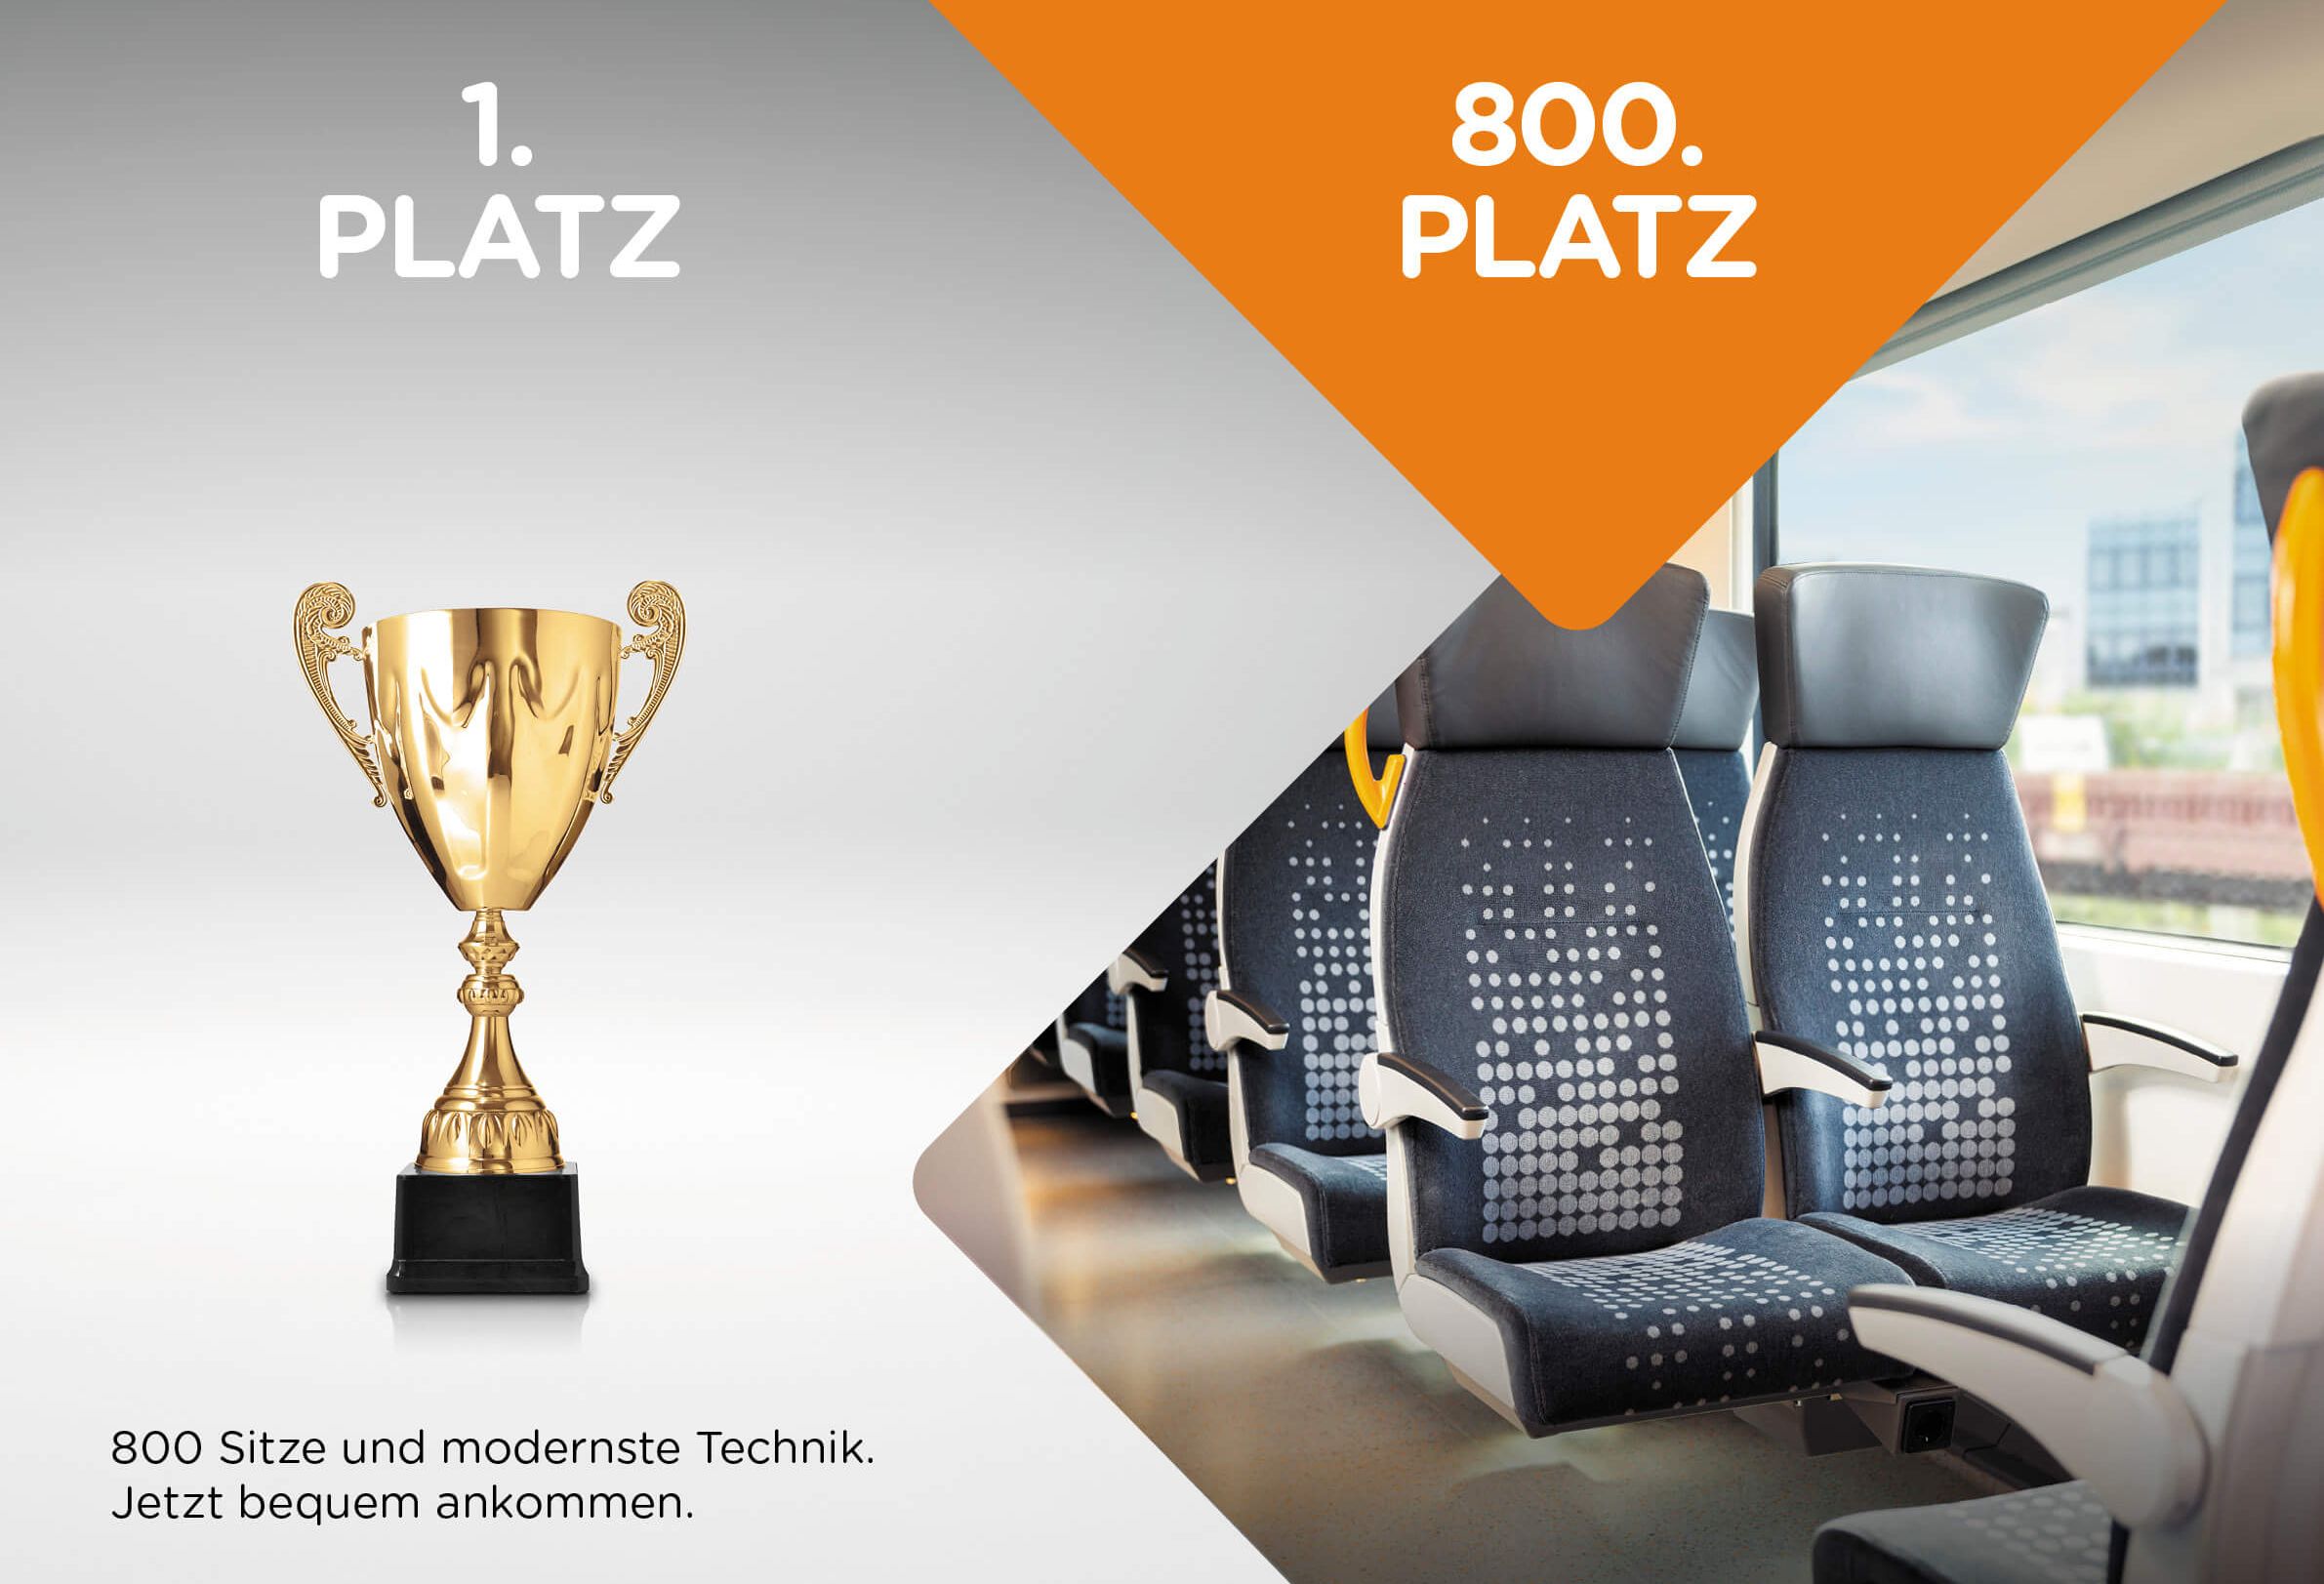 In der Vergleichsgrafik ist links ein goldener Pokal mit dem Titel "1. Platz" zu sehen, rechts daneben sieht man die Sitze des RRX mit dem Text "800. Platz".